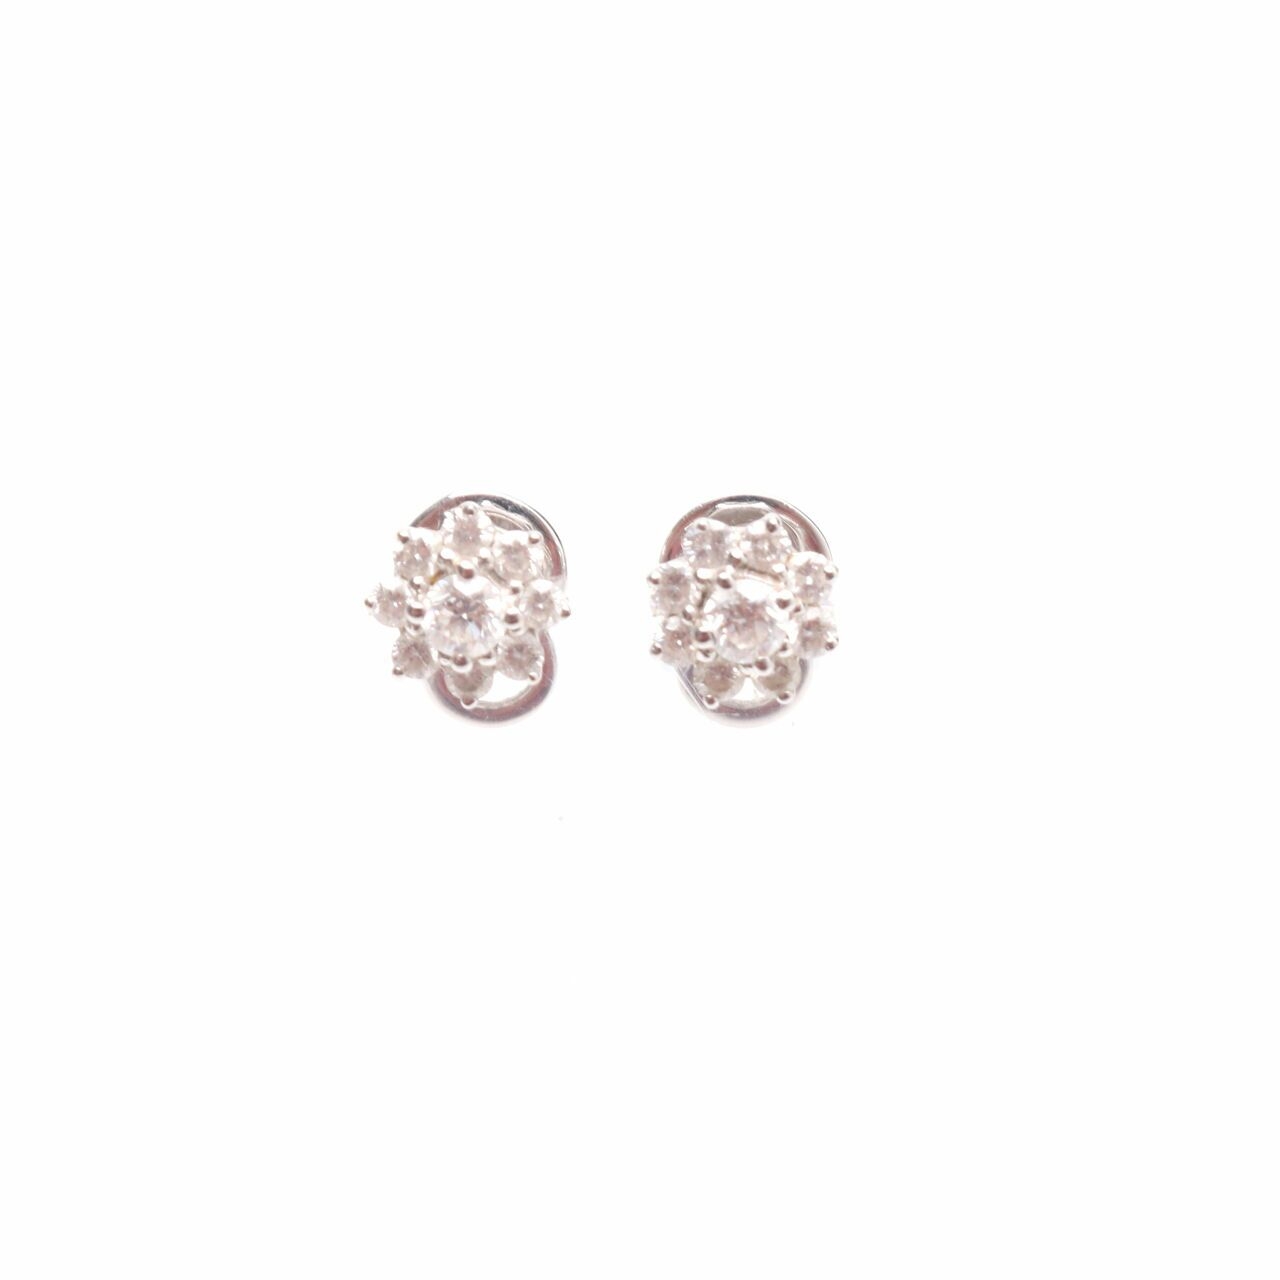 Frank & Co Silver Earrings